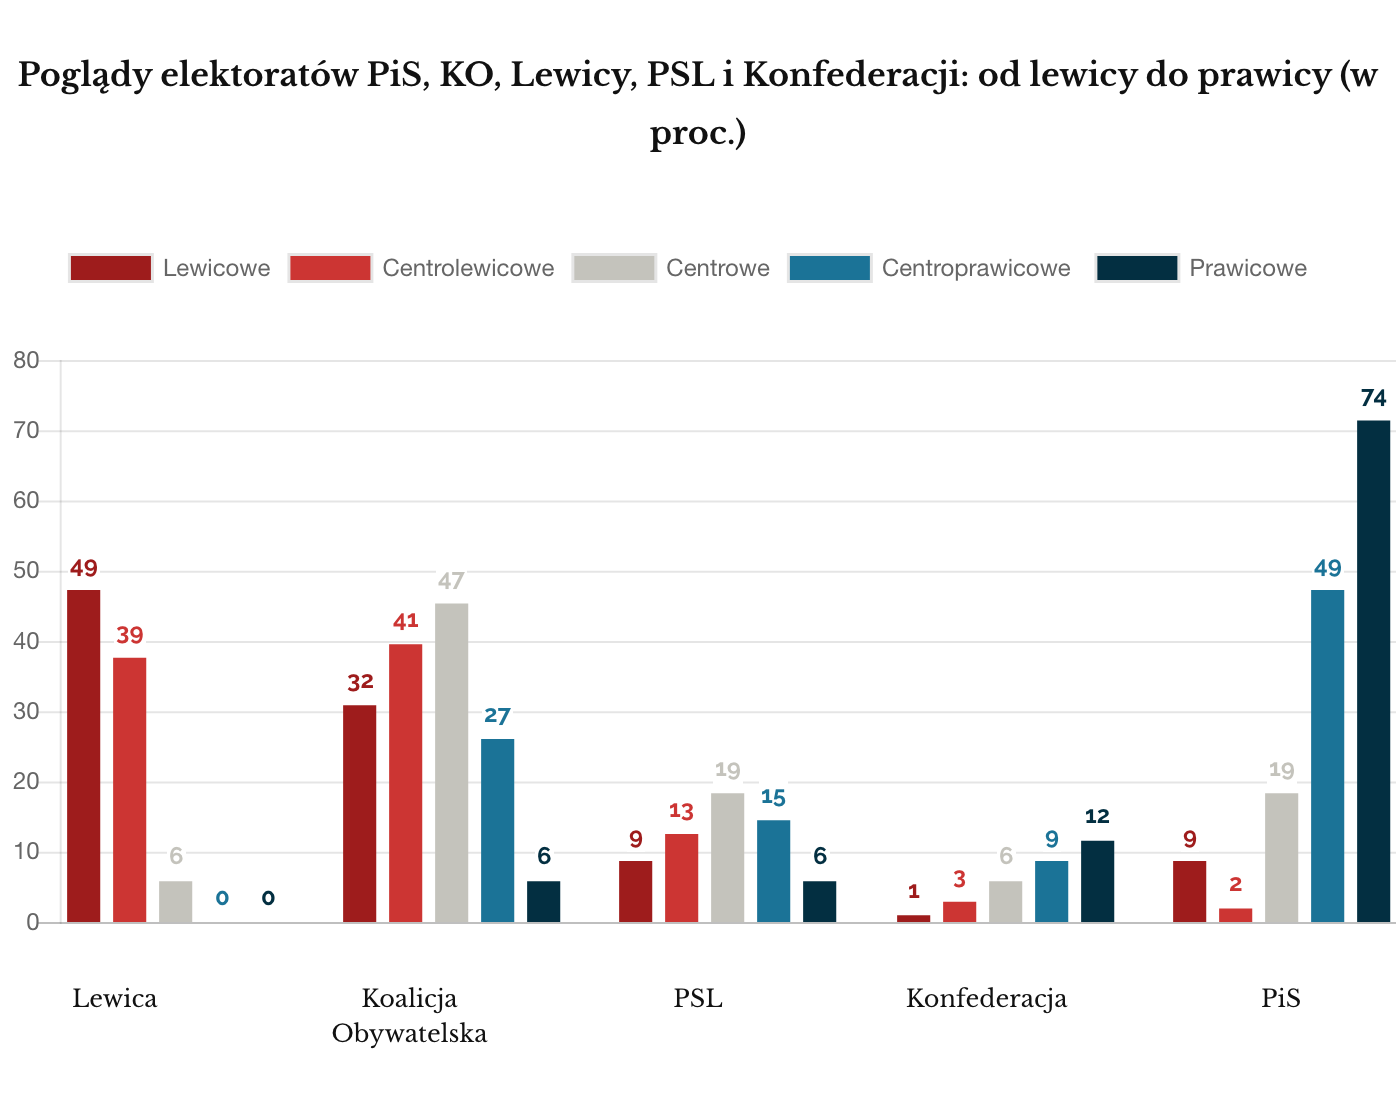 Ipsos październik 2019 Poglądy elektoratów prawica lewica w proc.